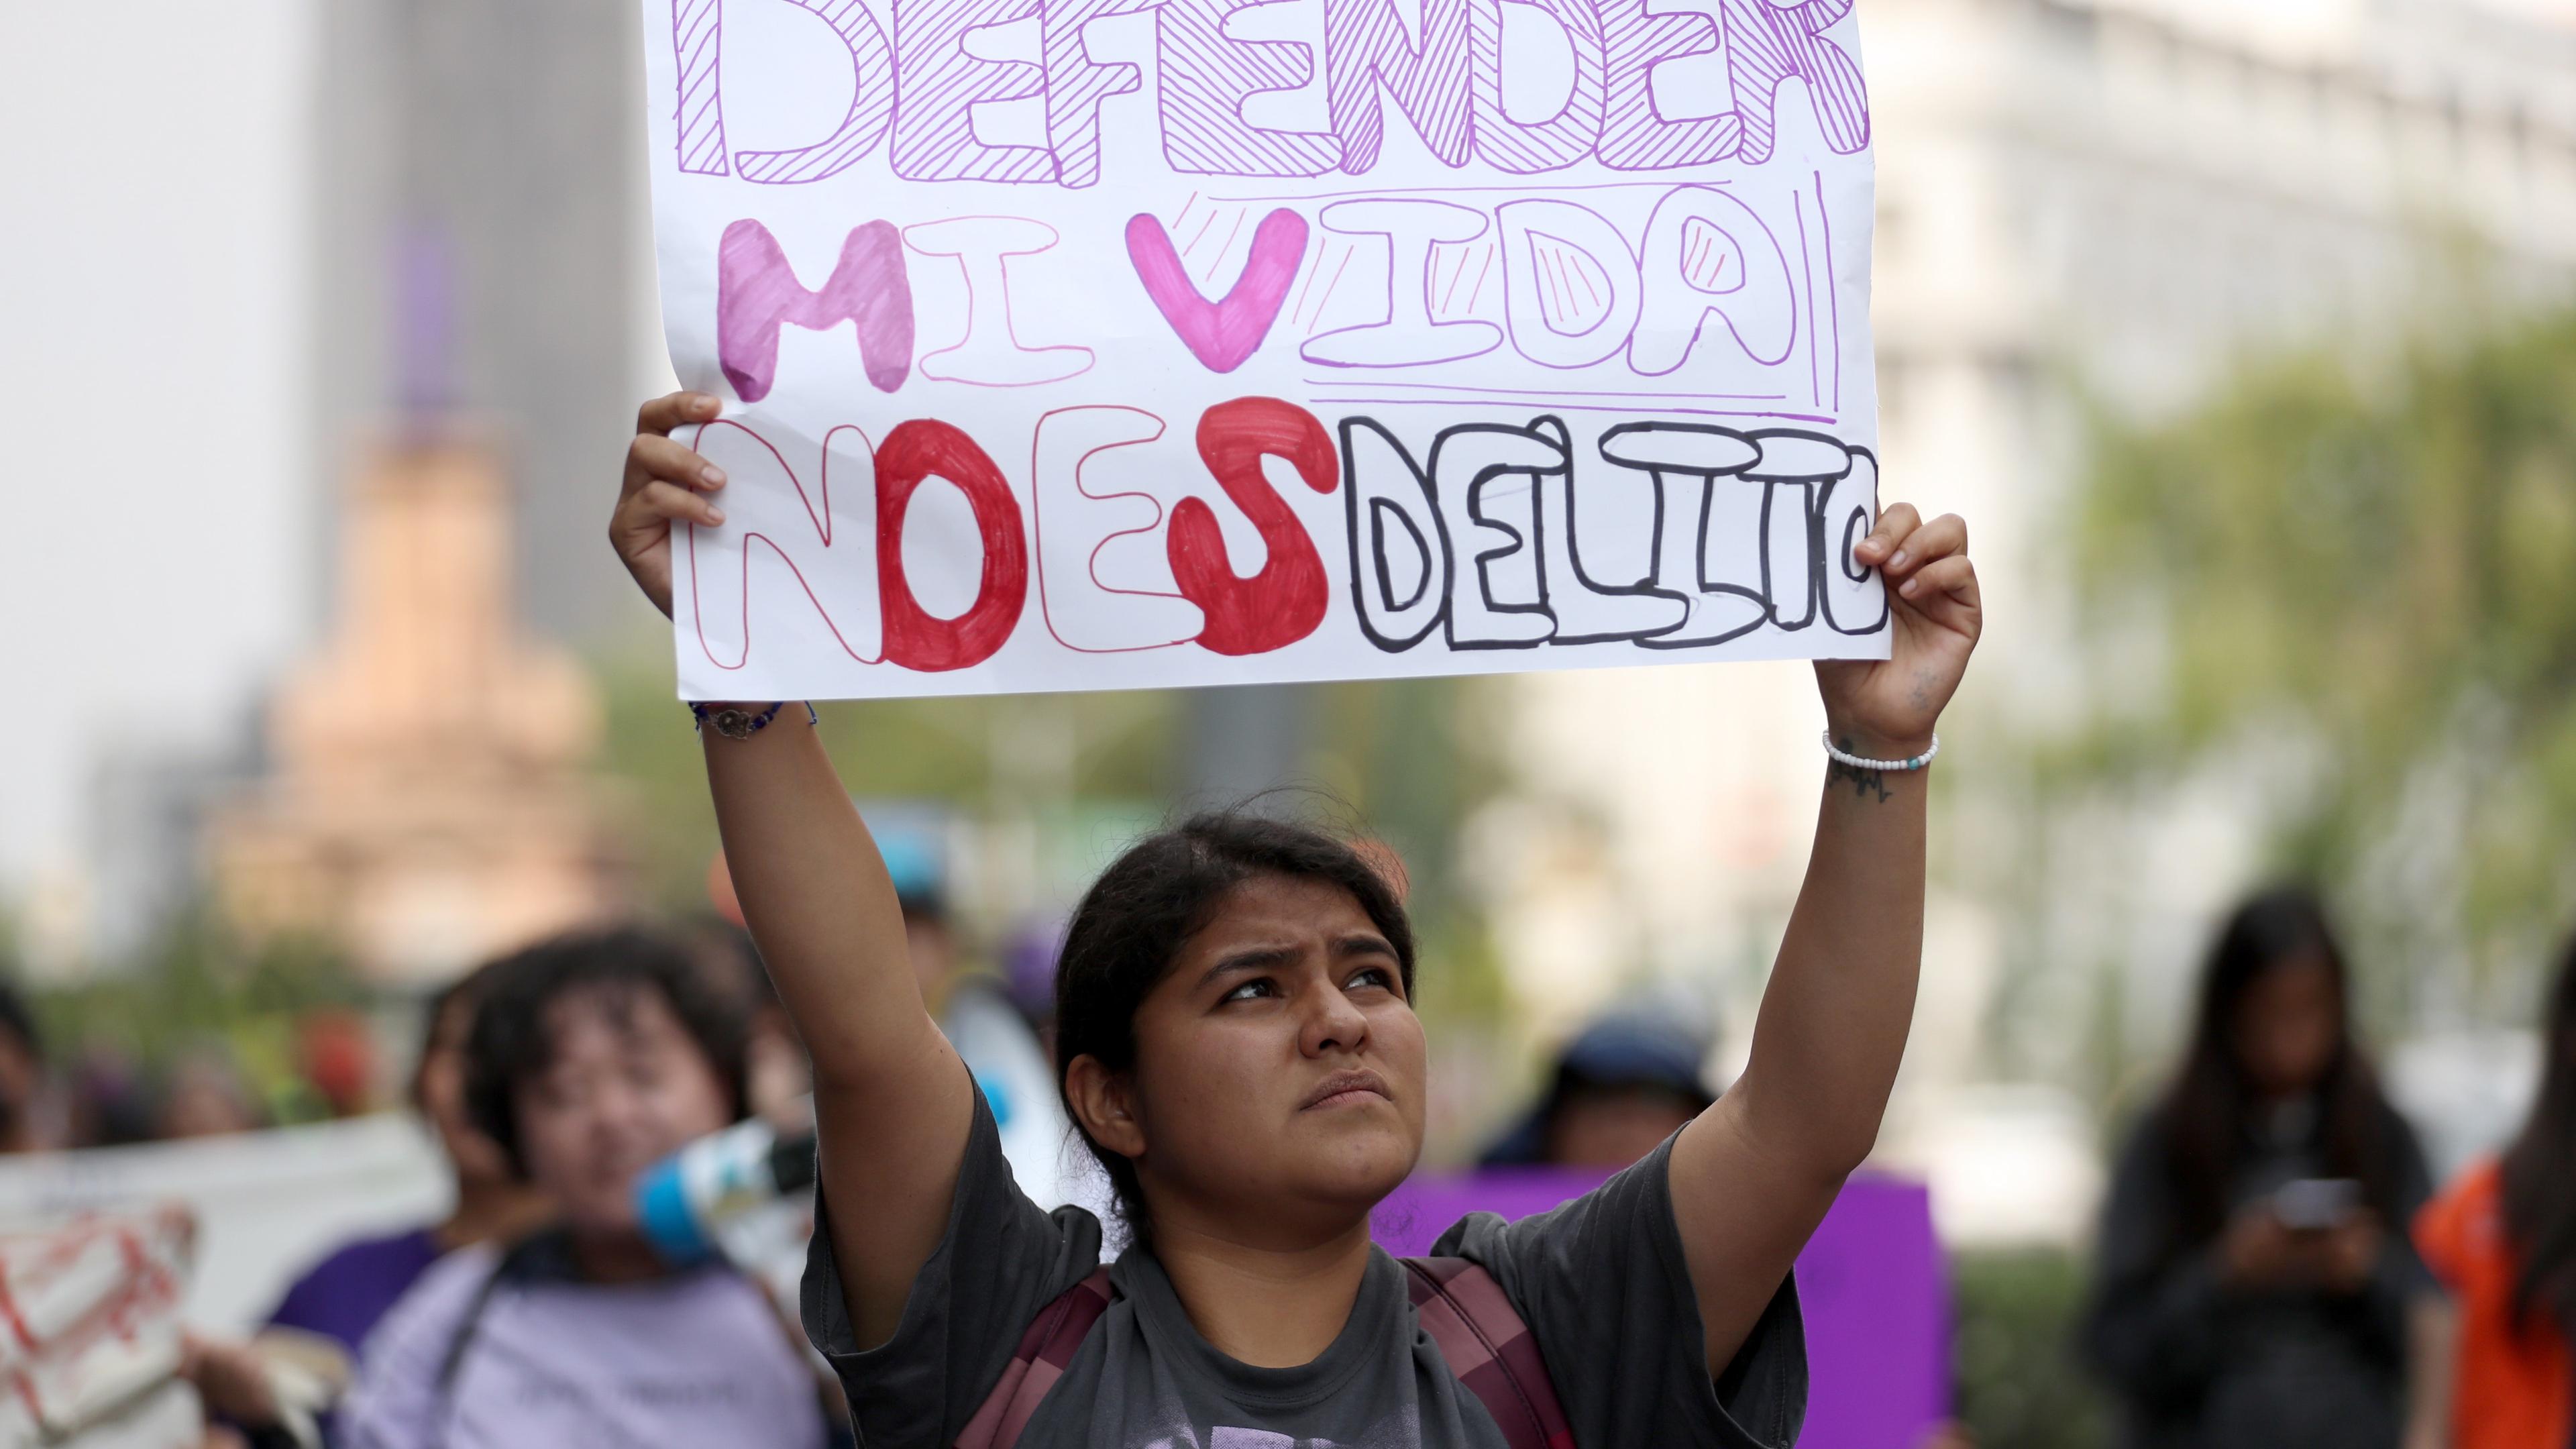 Roxana Ruiz, deren Urteil wegen Mordes an ihrem Vergewaltiger kürzlich aufgehoben wurde, protestiert für die Rechte von Frauen in Mexiko